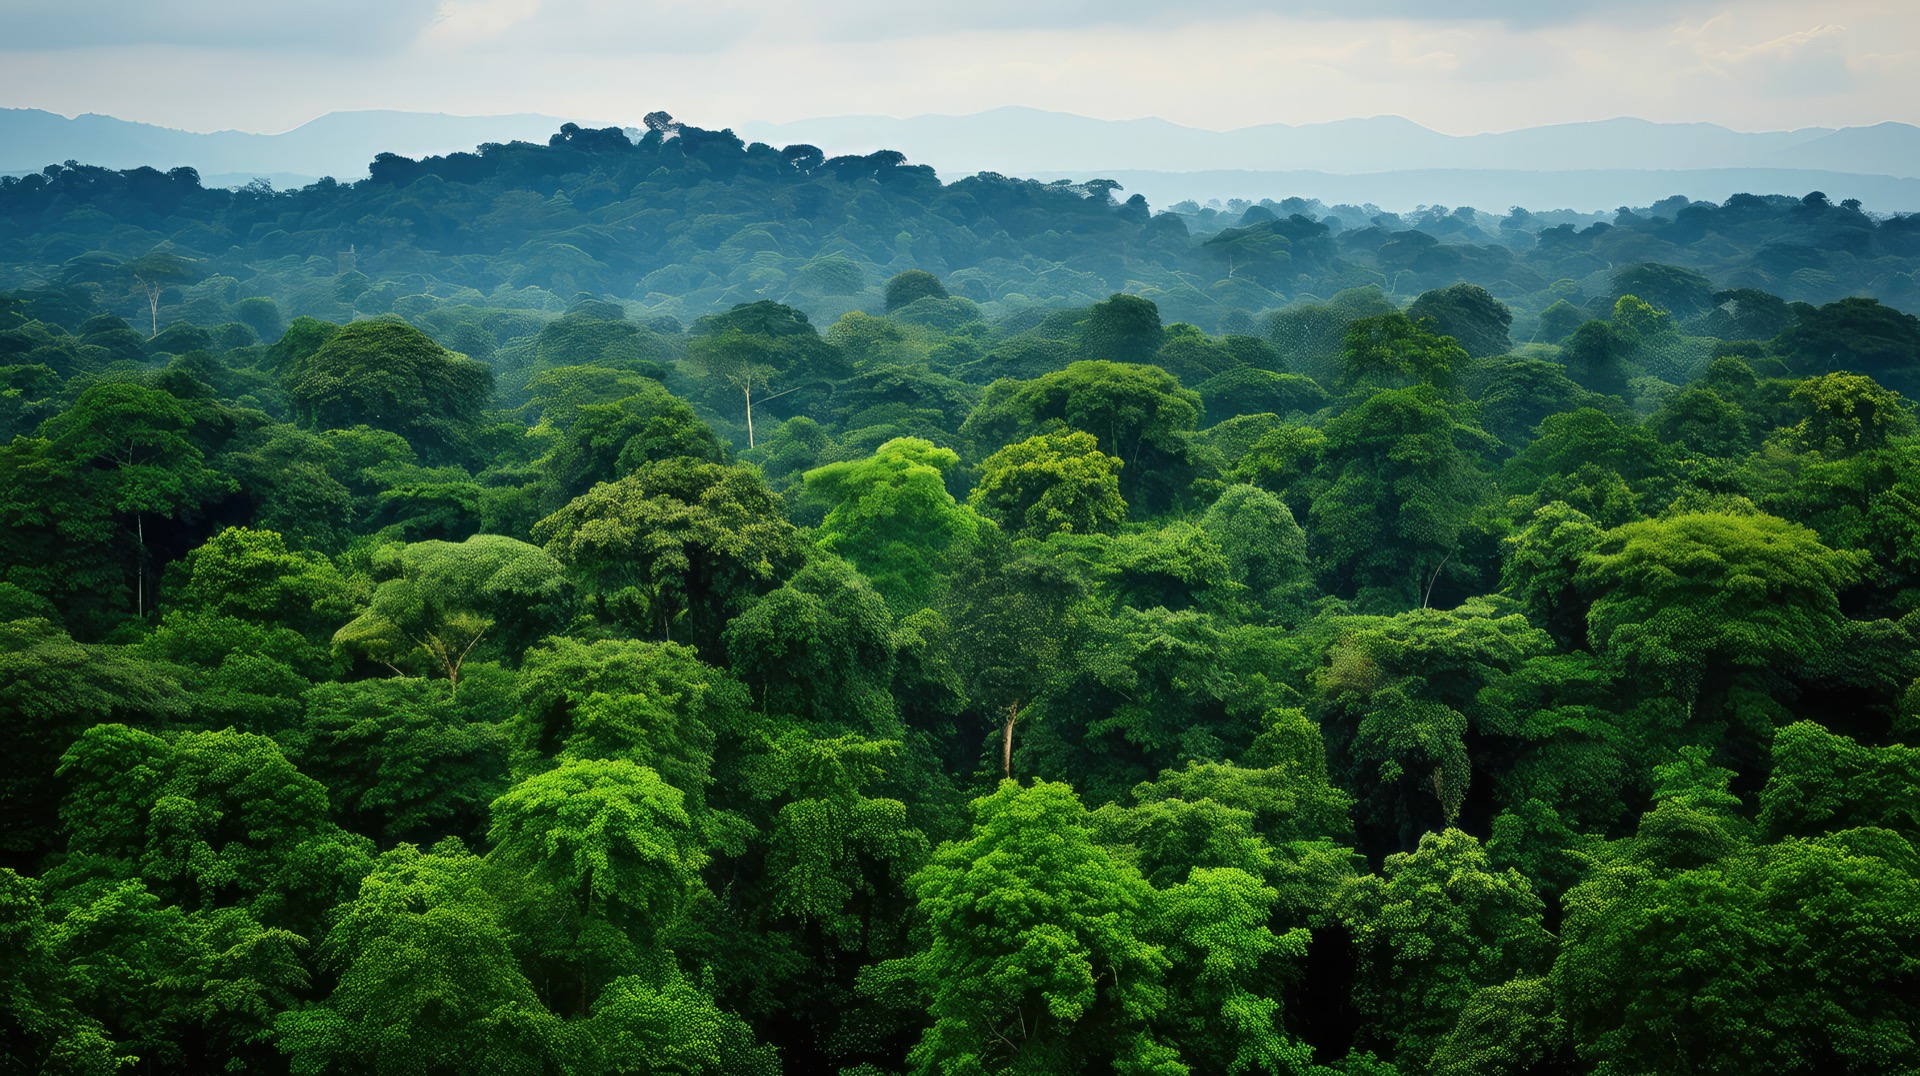 En Amazonie, la déforestation modifie la croissance et la morphologie des arbres en lisière des zones déboisées. © sevector, Adobe Stock